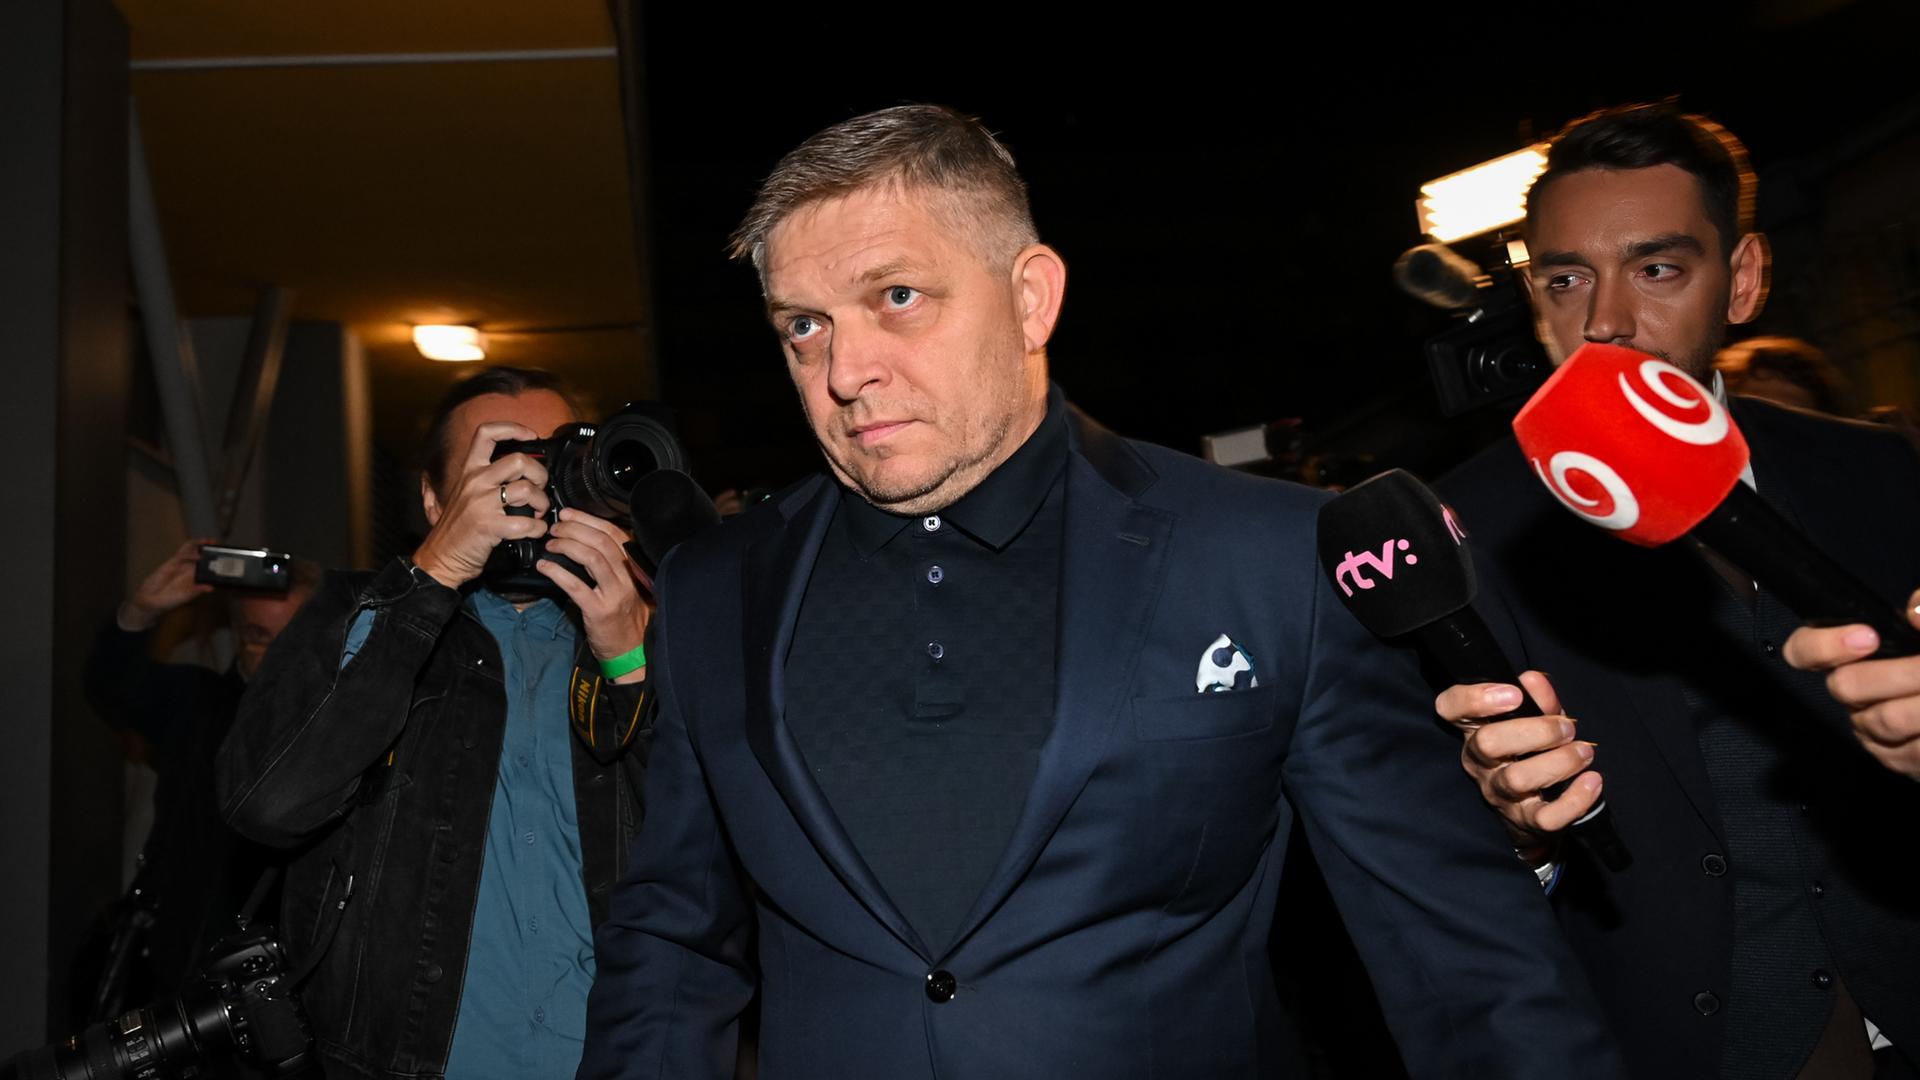 Slowakei - Partei des pro-russischen Ex-Ministerpräsidenten Fico wird mit Regierungsbildung beauftragt